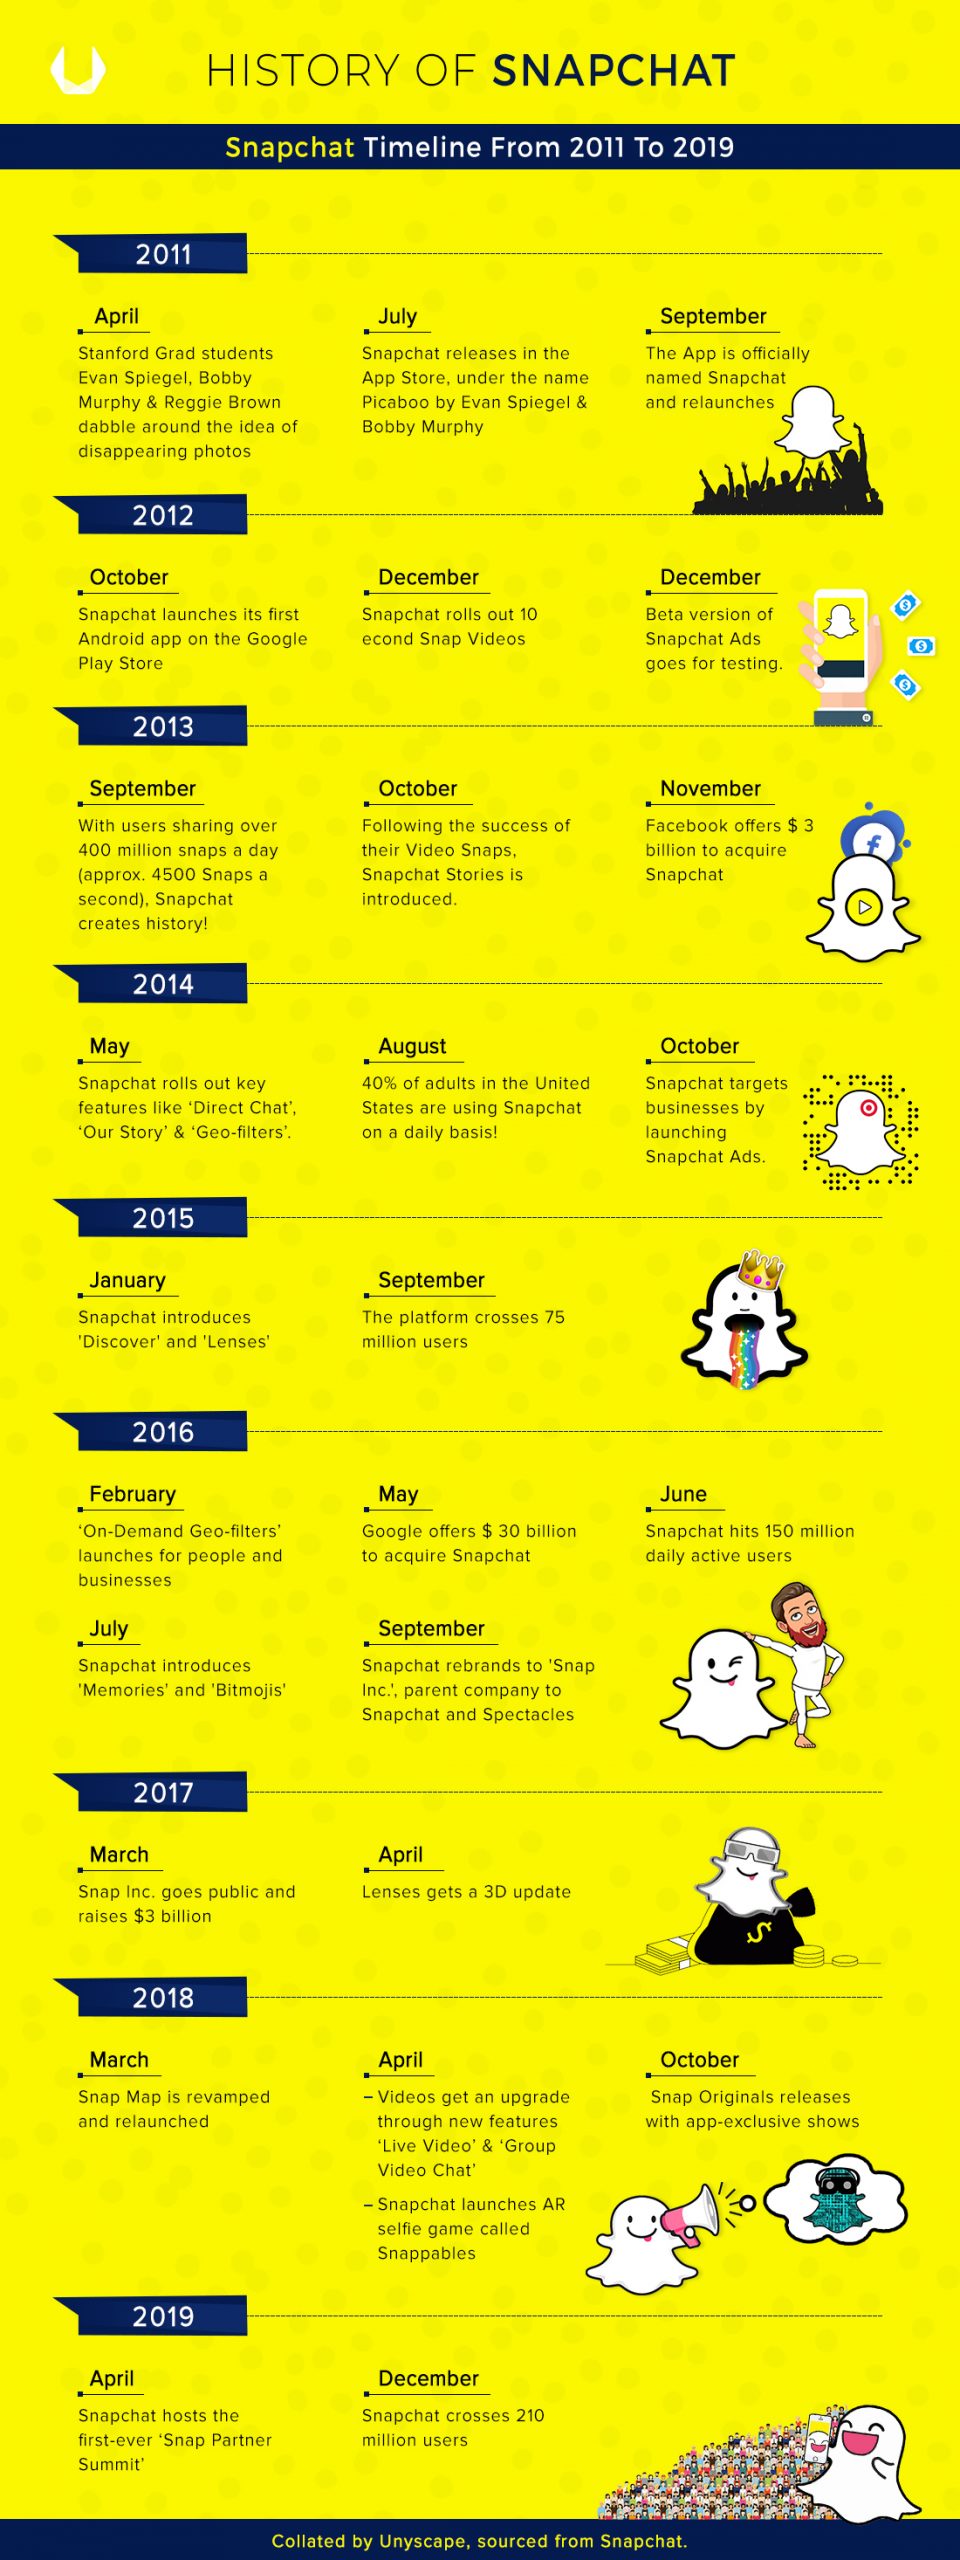 History of Snapchat